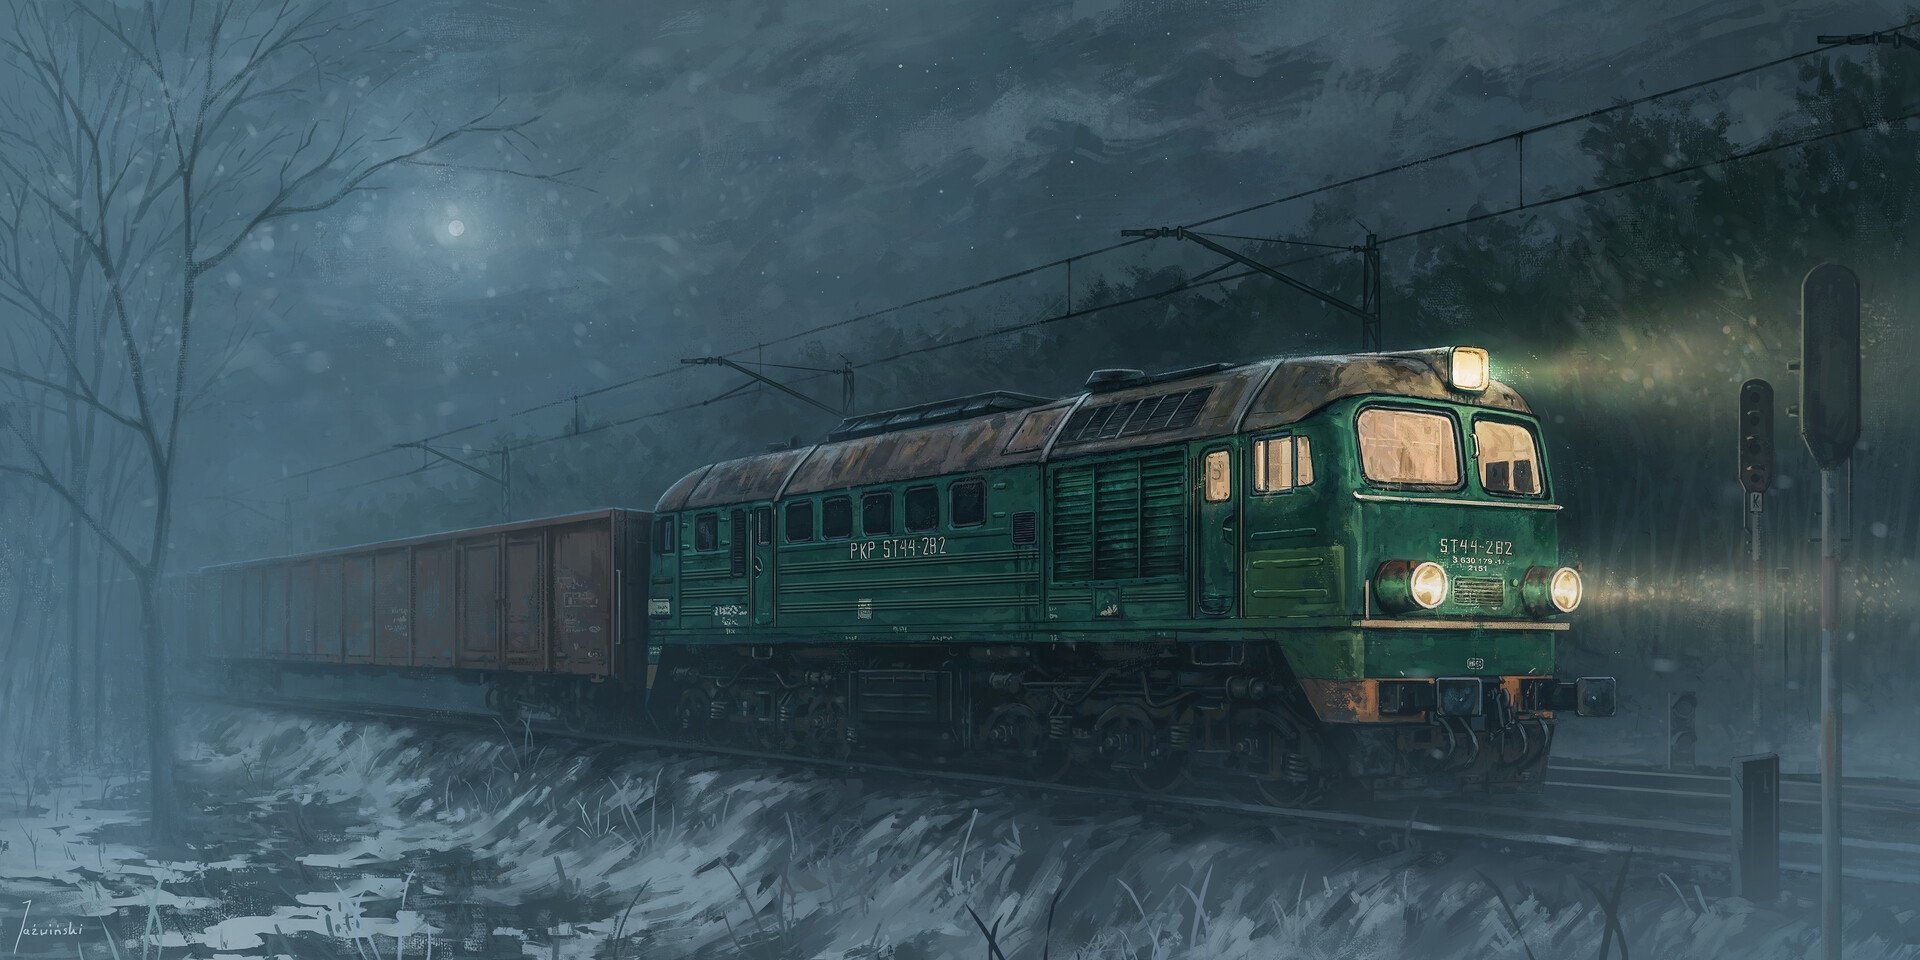 Звук приближающегося поезда. Поезд призрак СССР эр2 901. Поезда призраки вл80. Поезд арт.